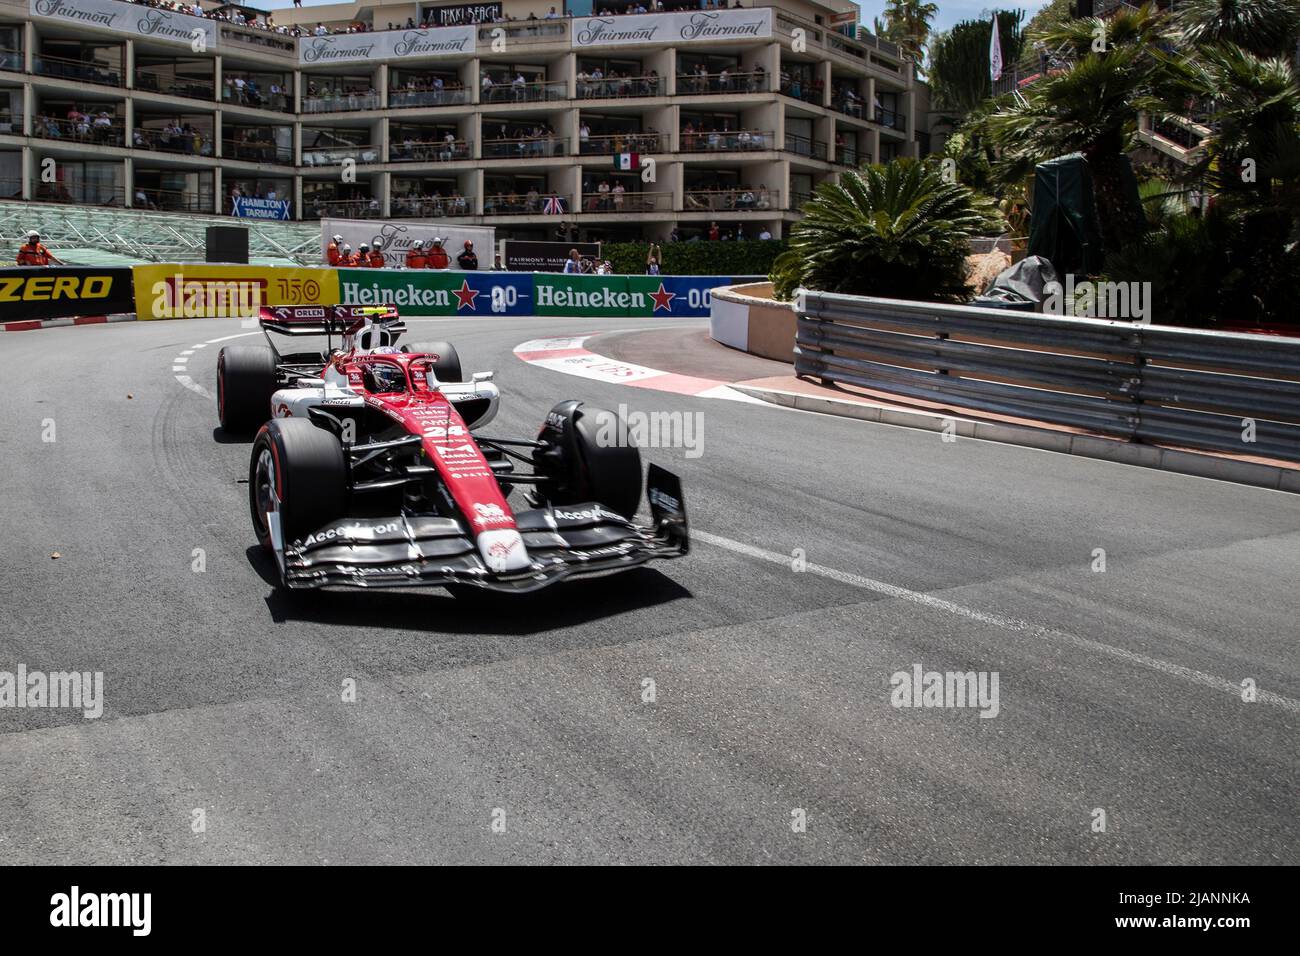 Le Grand Prix de Formule 1 à Montecarlo MonacoGP F1 Banque D'Images